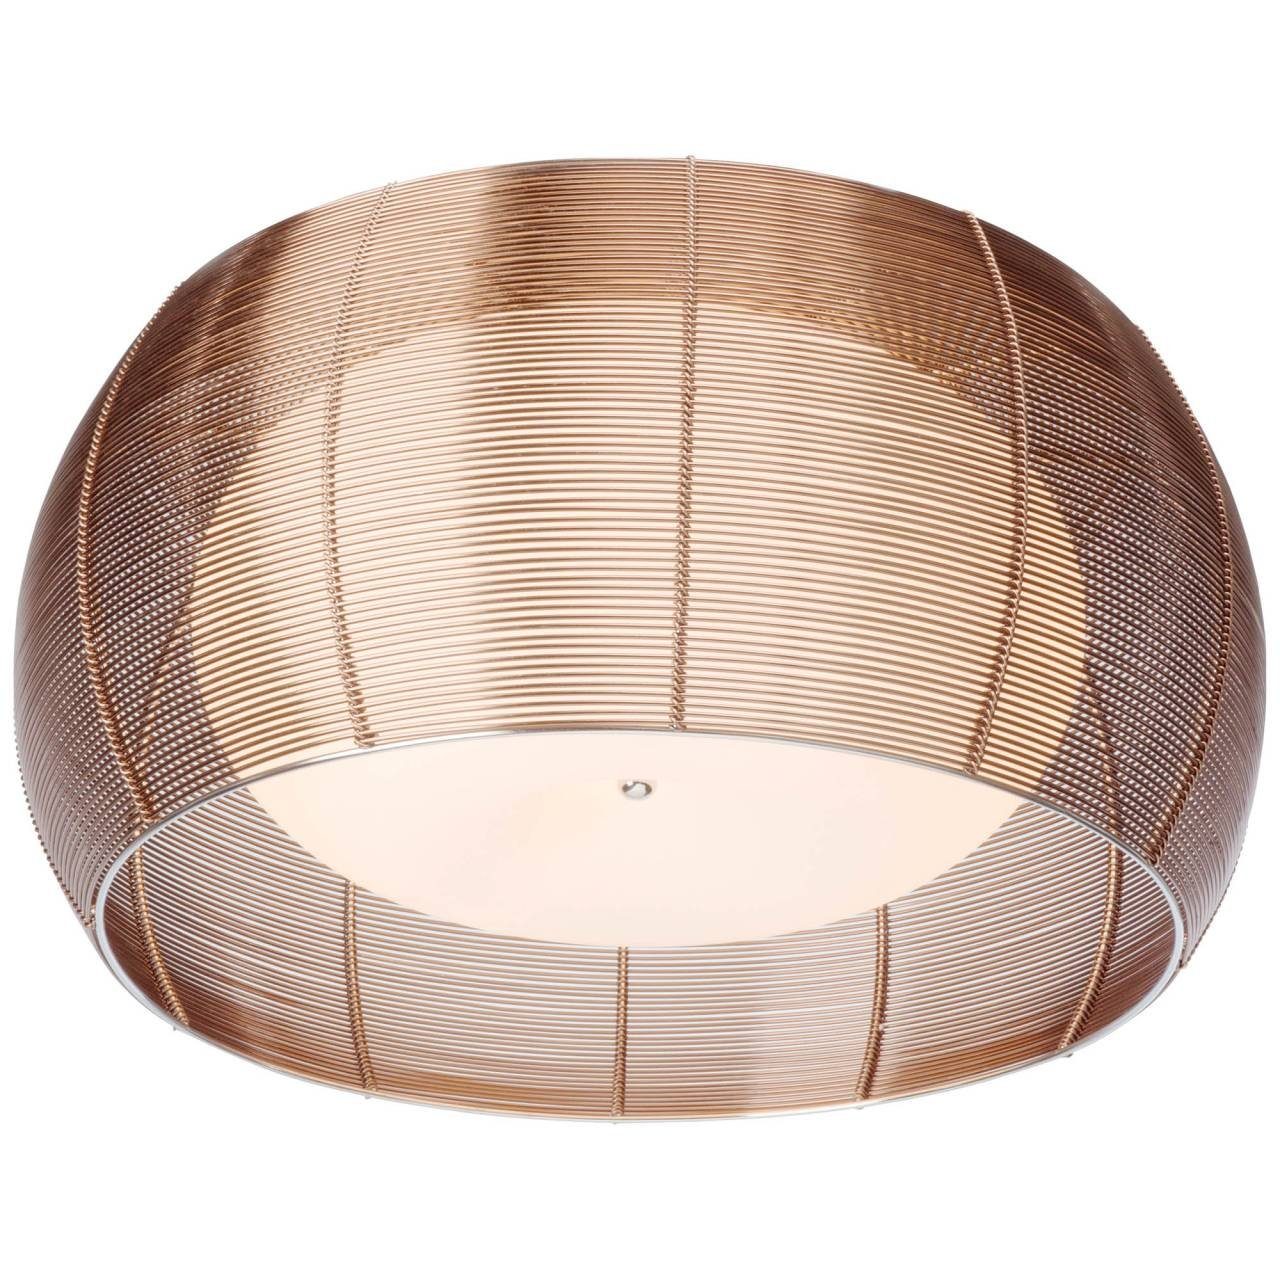 A60, Brilliant Lampe Relax, 30W, E27, g.f. N 2x bronze/chrom Relax 50cm Deckenleuchte Deckenleuchte